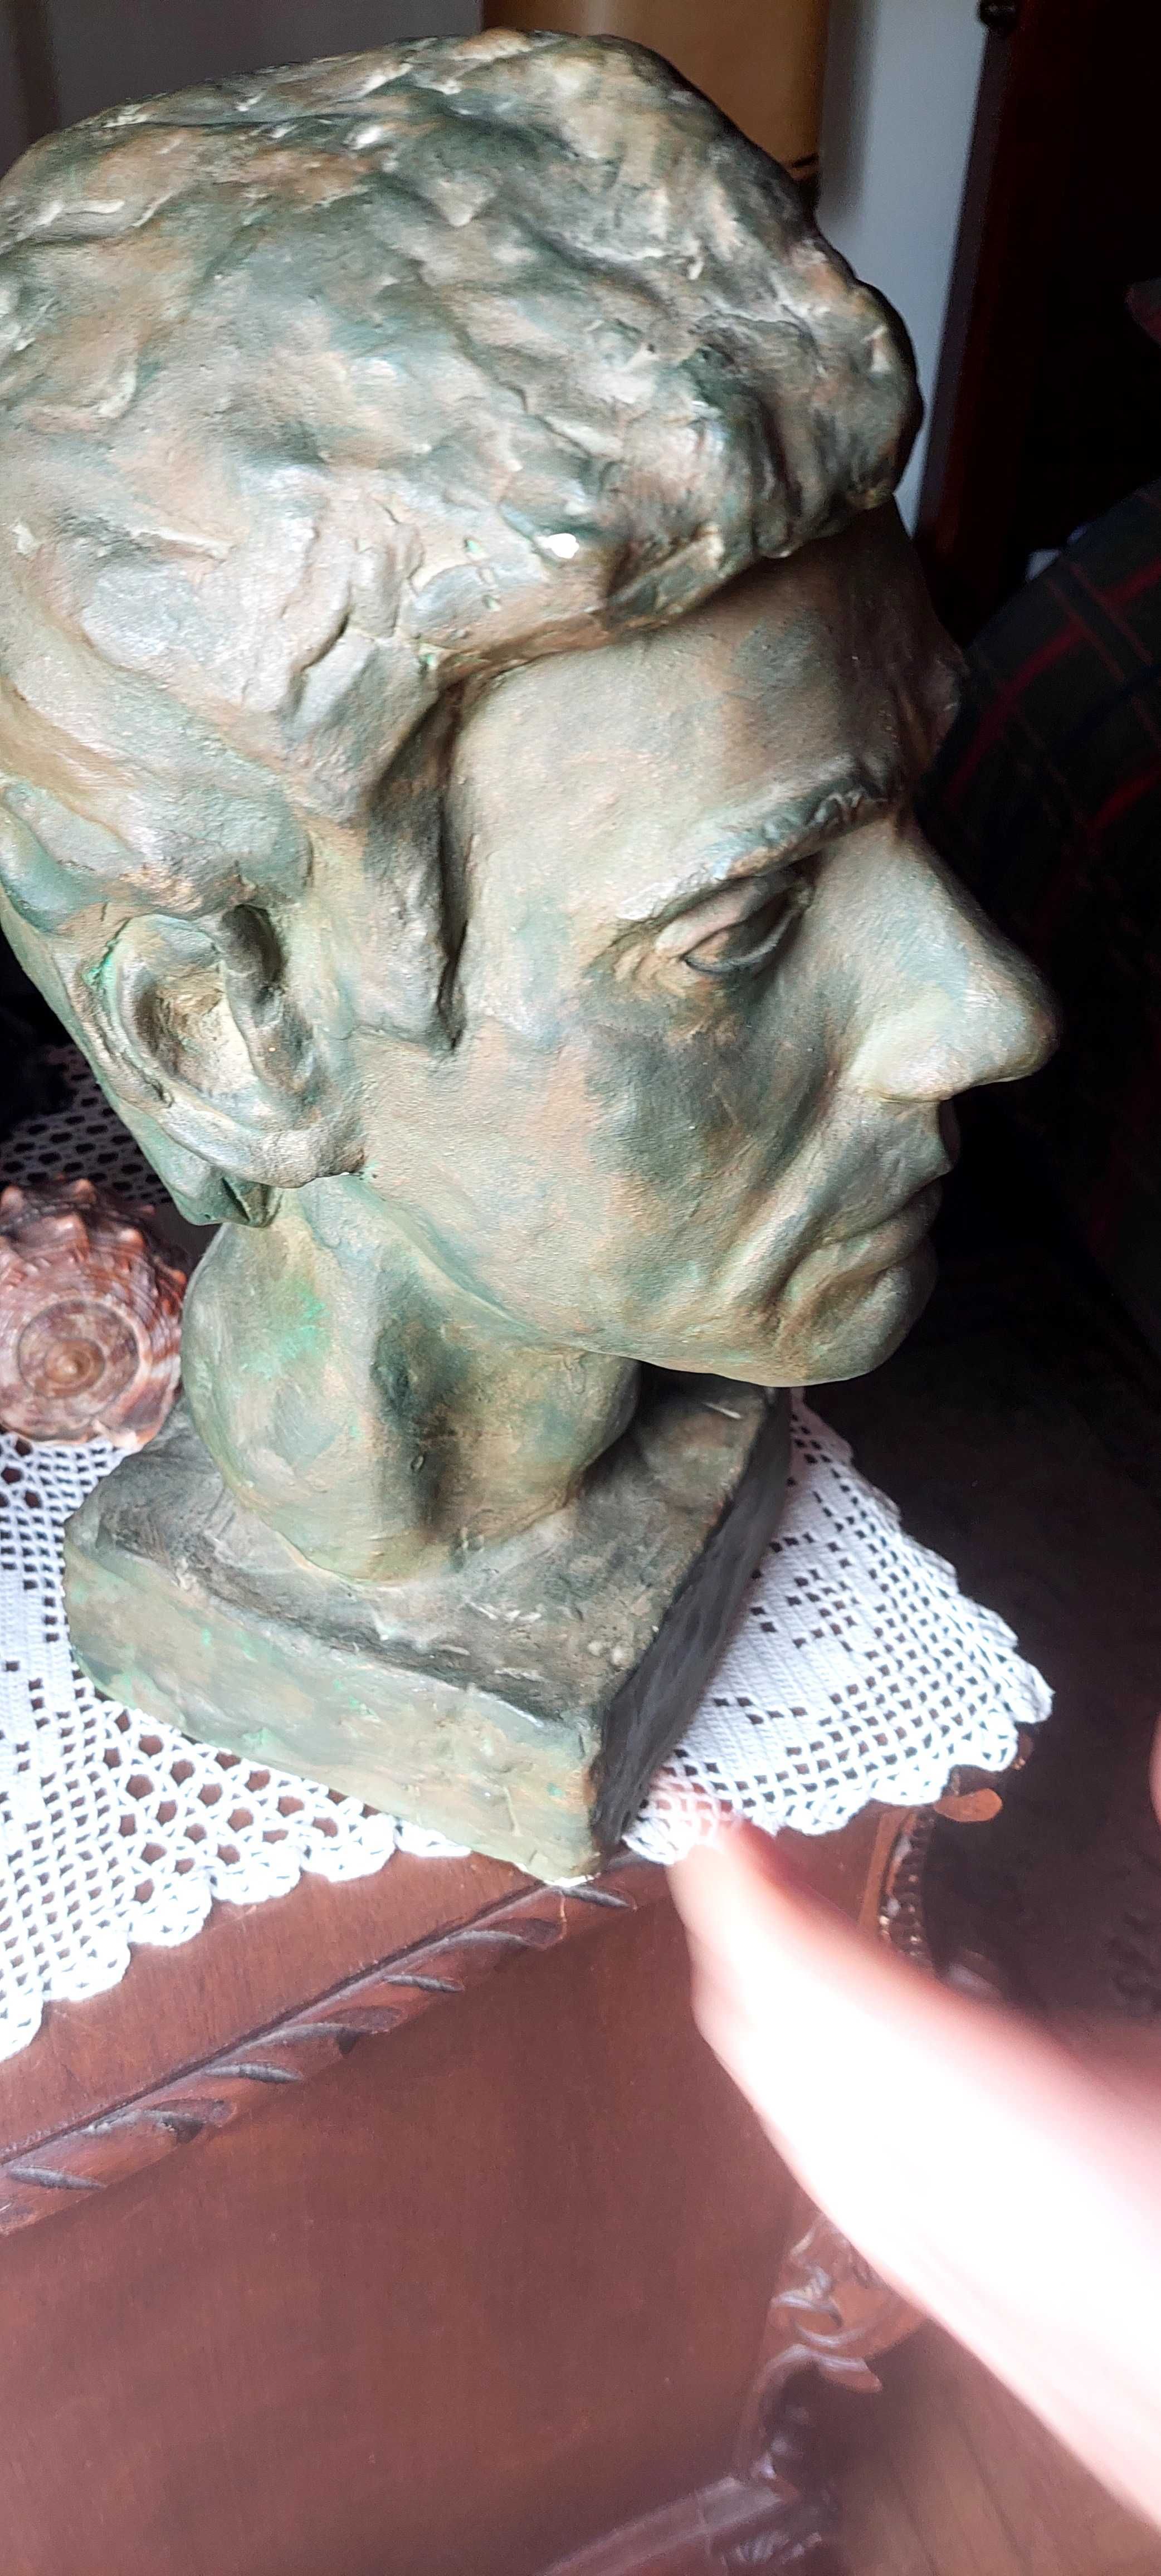 Raimundo Aragão  busto gesso  escultura.  1978. Albufeira Algarve